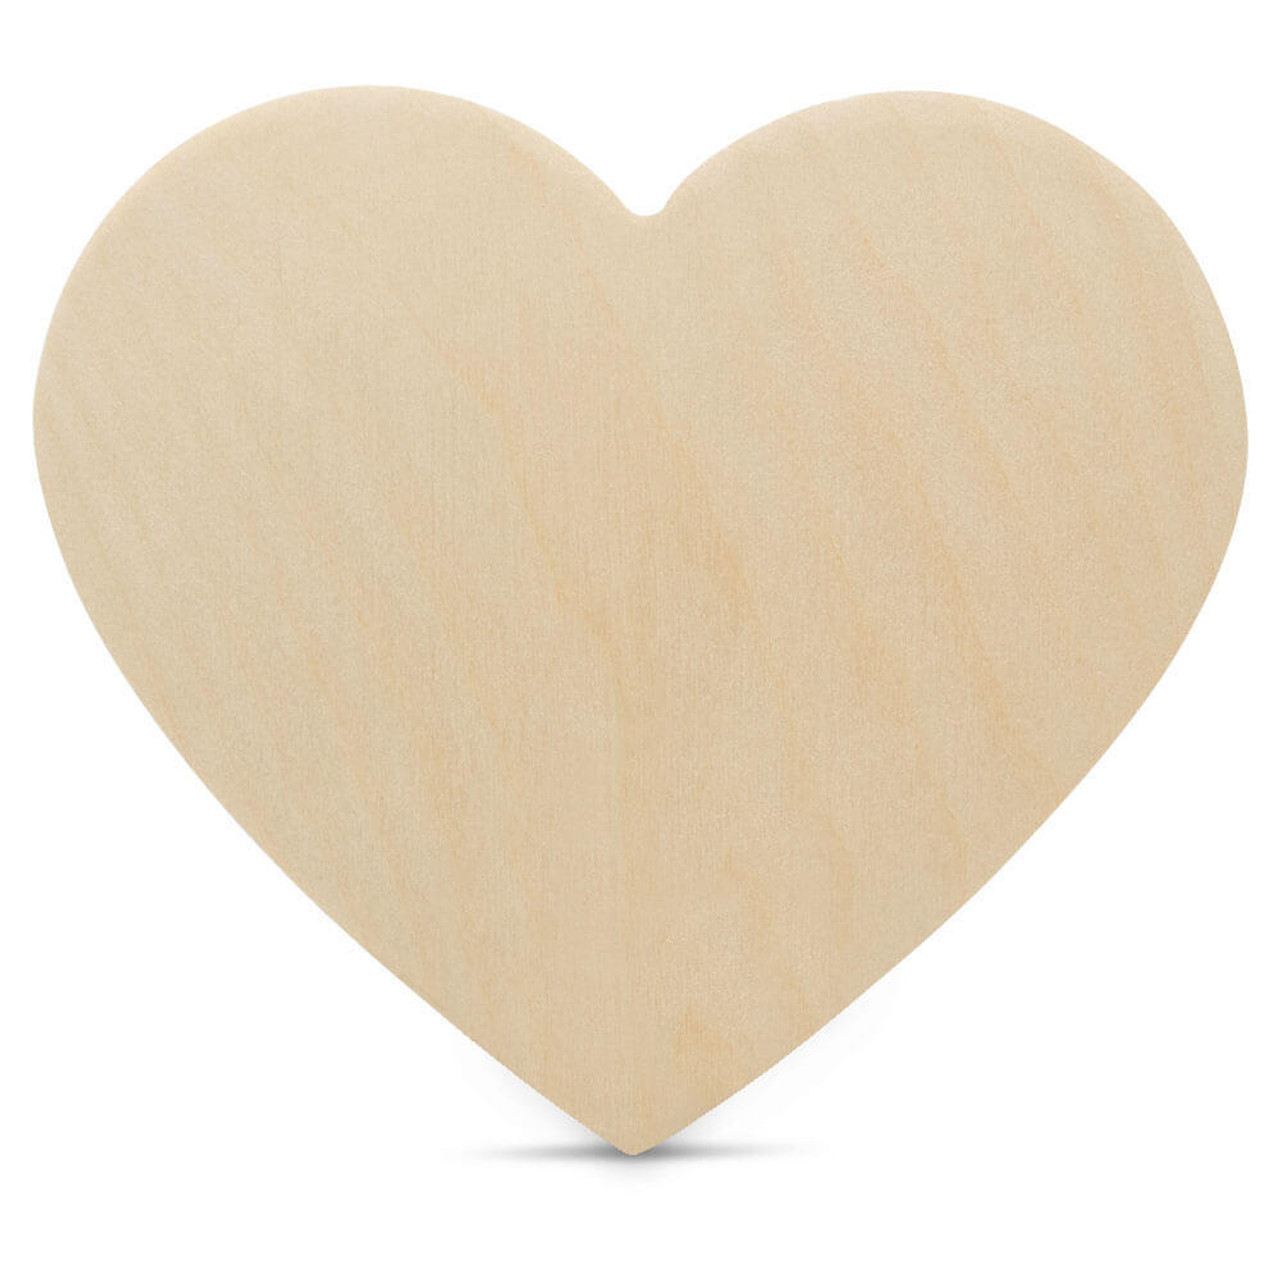 20 Heart Wooden Cutout, 20 x 18 x 1/4